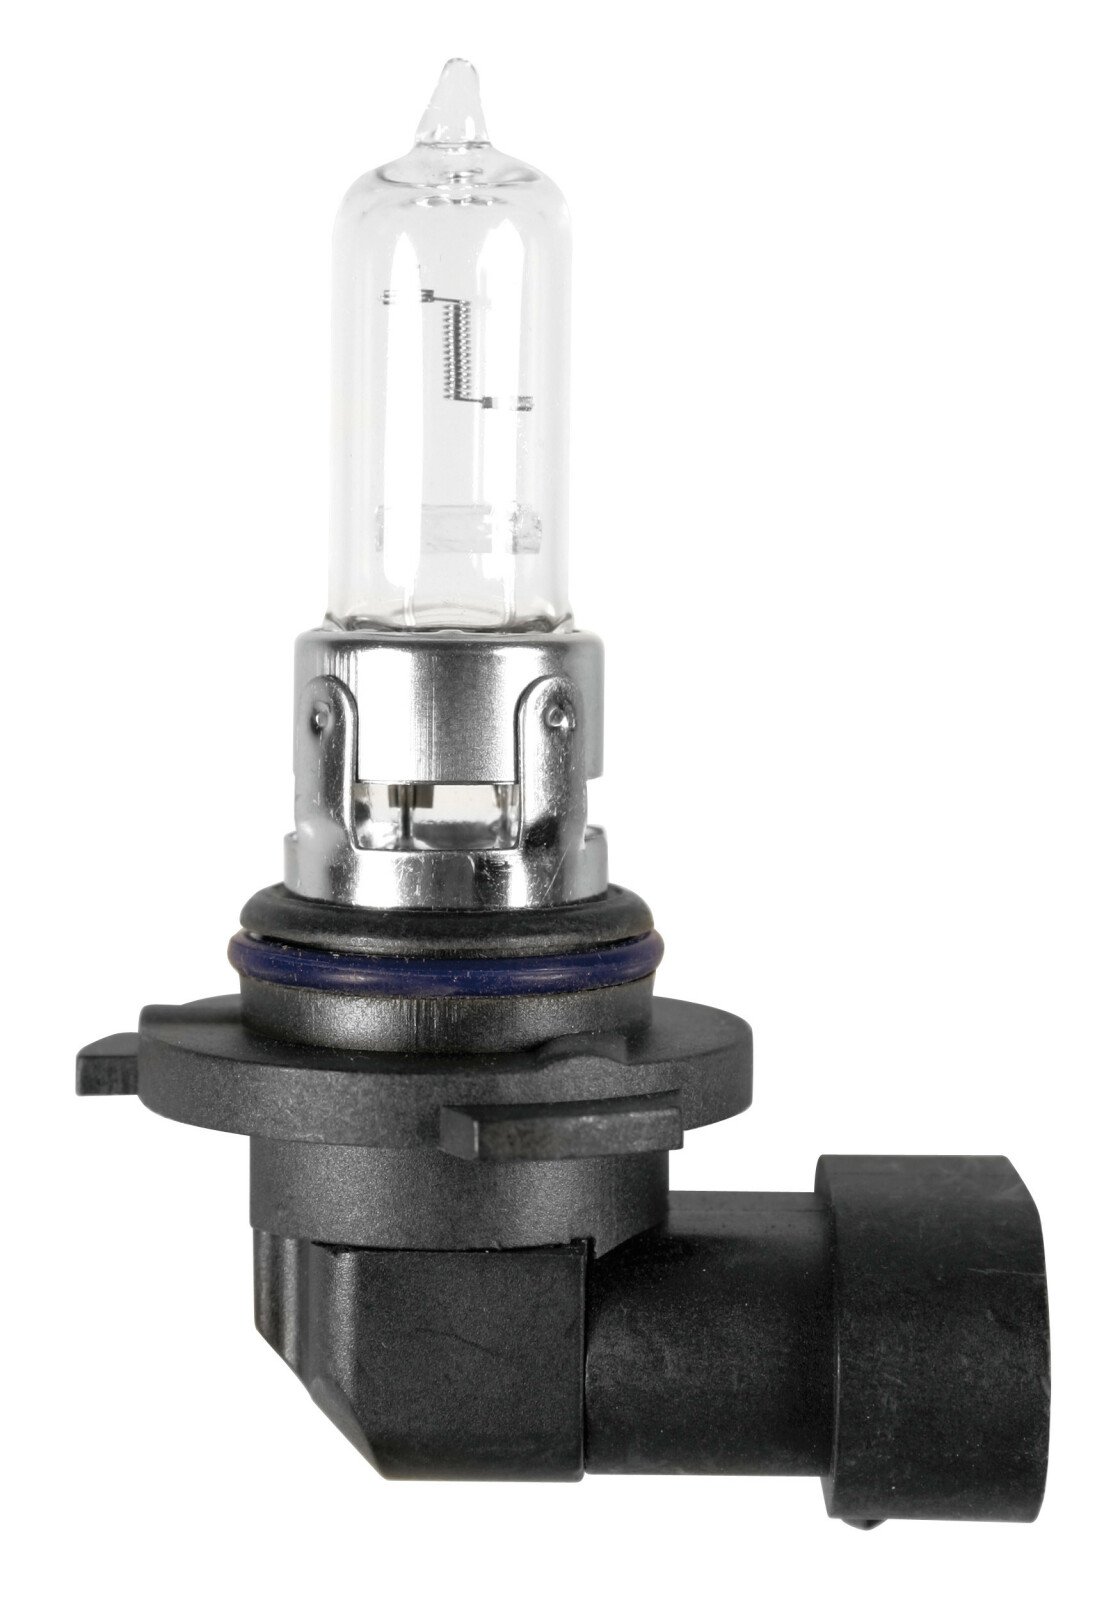 Bec halogen 12V - HB3 9005 - 60W - P20d 1buc Lampa thumb